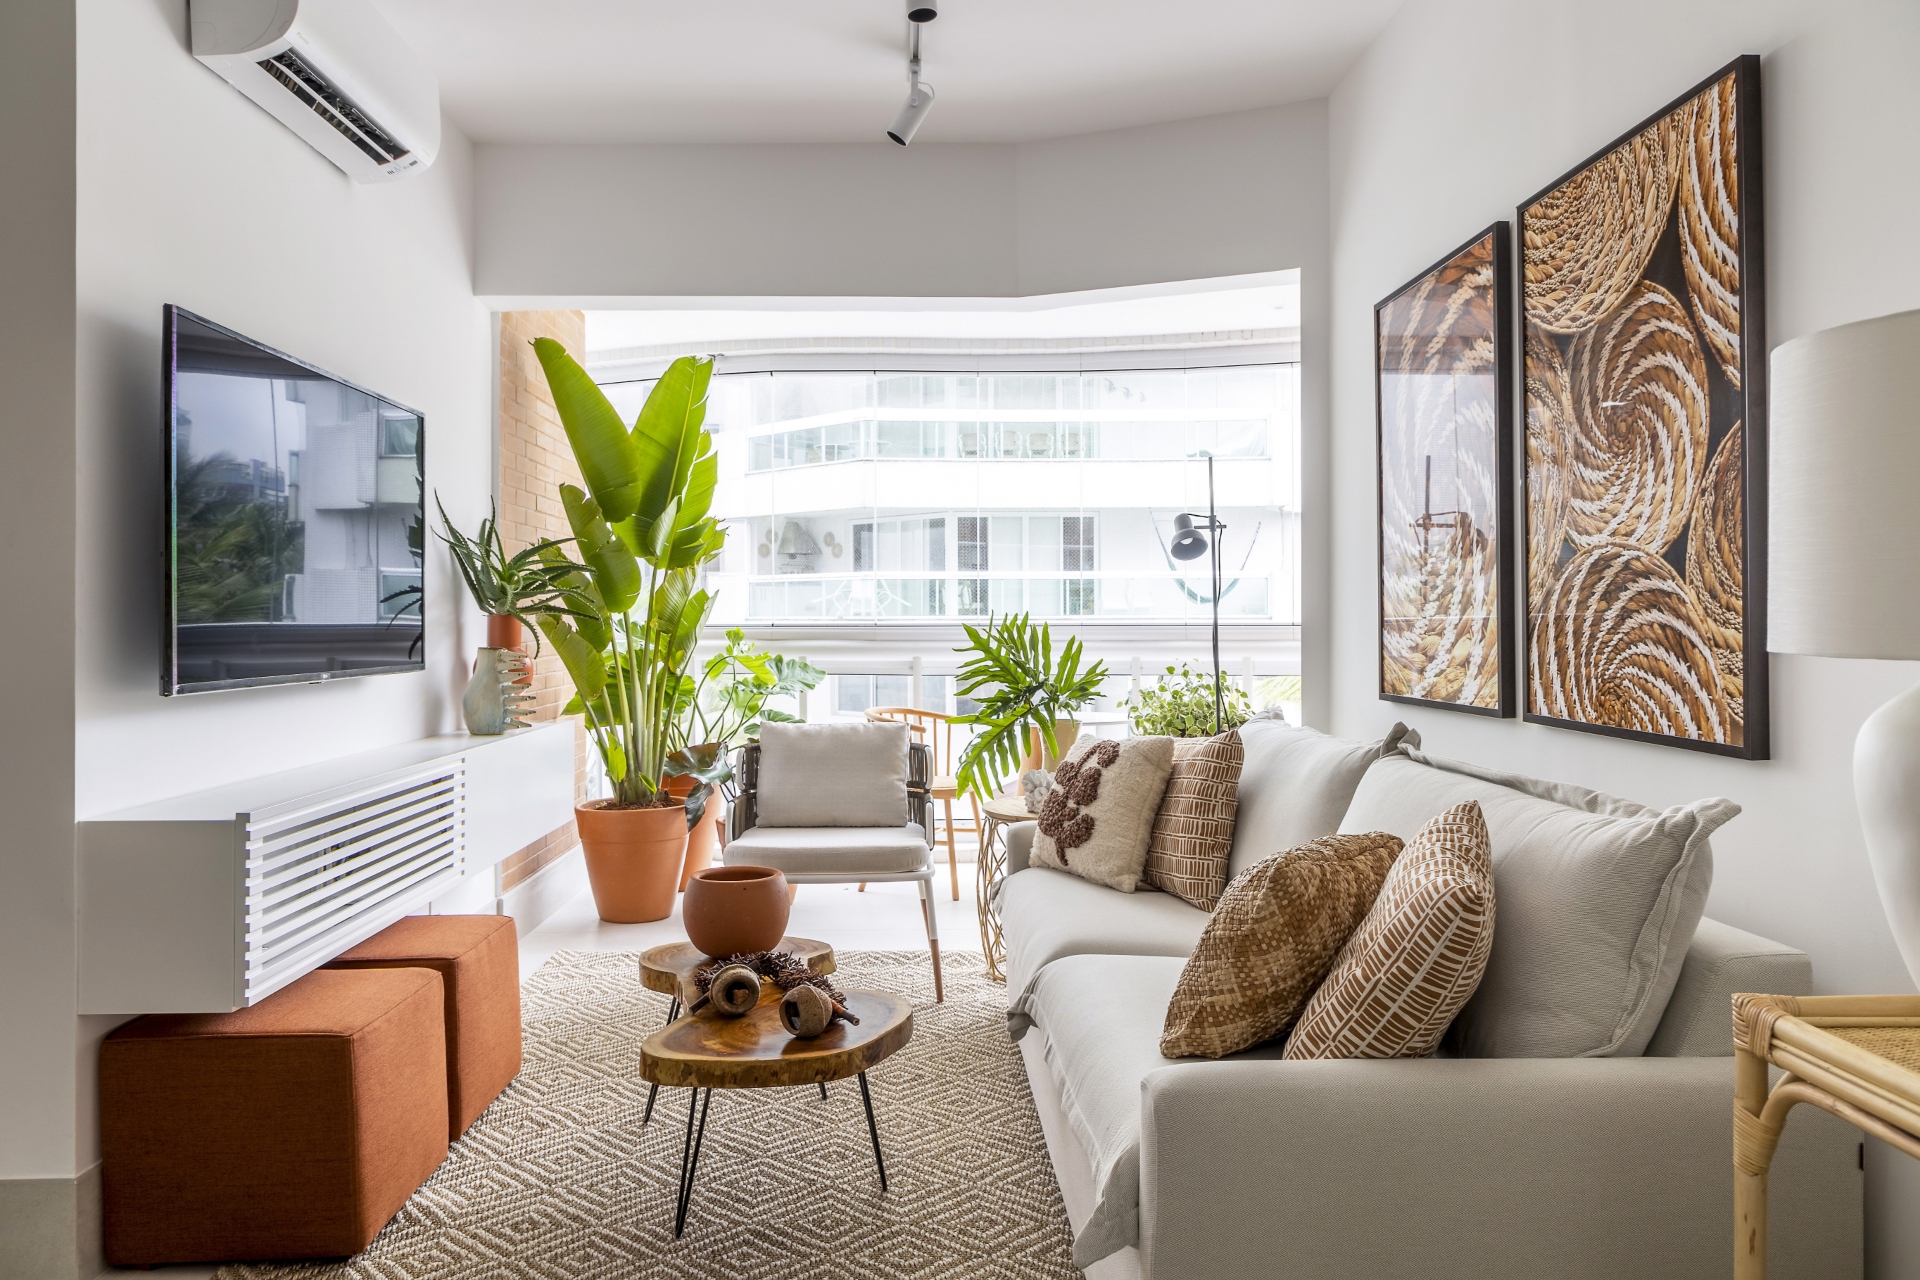 Sala de estar em apartamento foi decorada com vasos de plantas ( Projeto: Portobello)